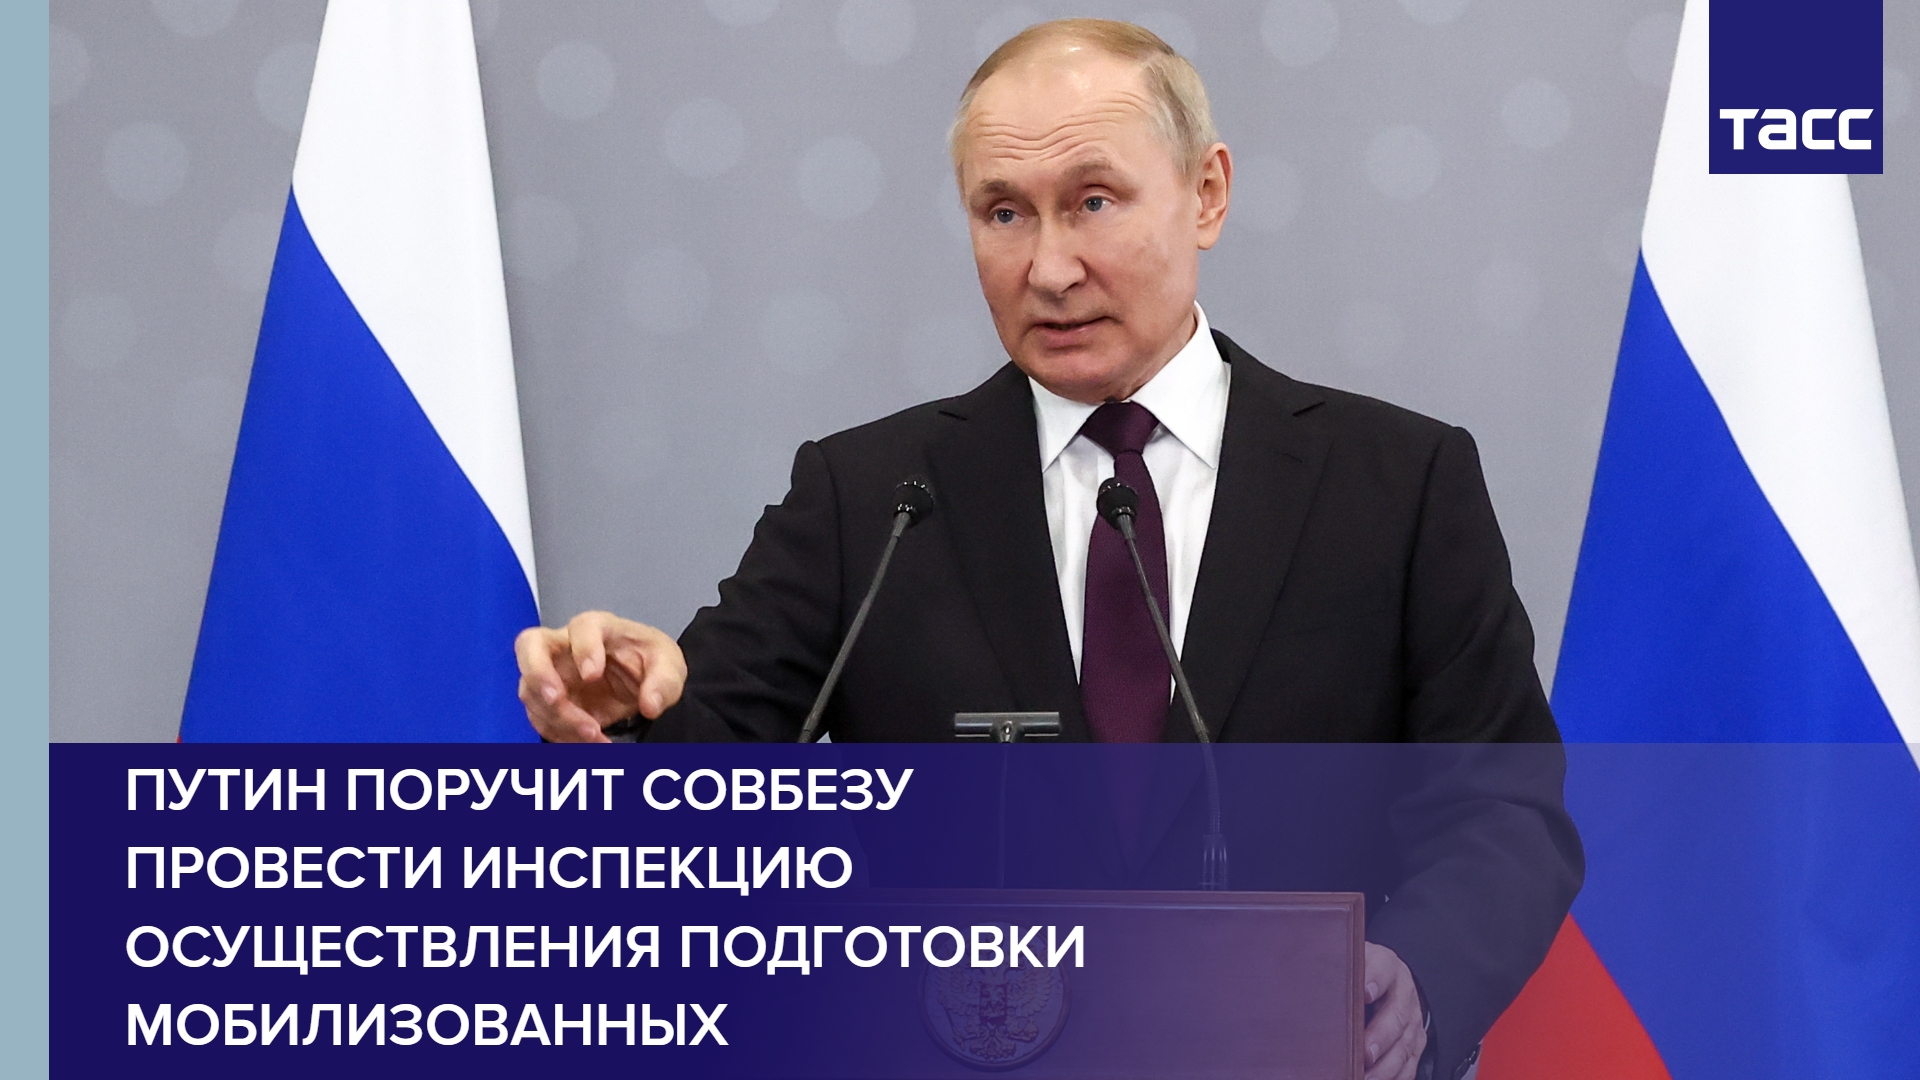 Путин поручит Совбезу провести инспекцию осуществления подготовки мобилизованных #shorts